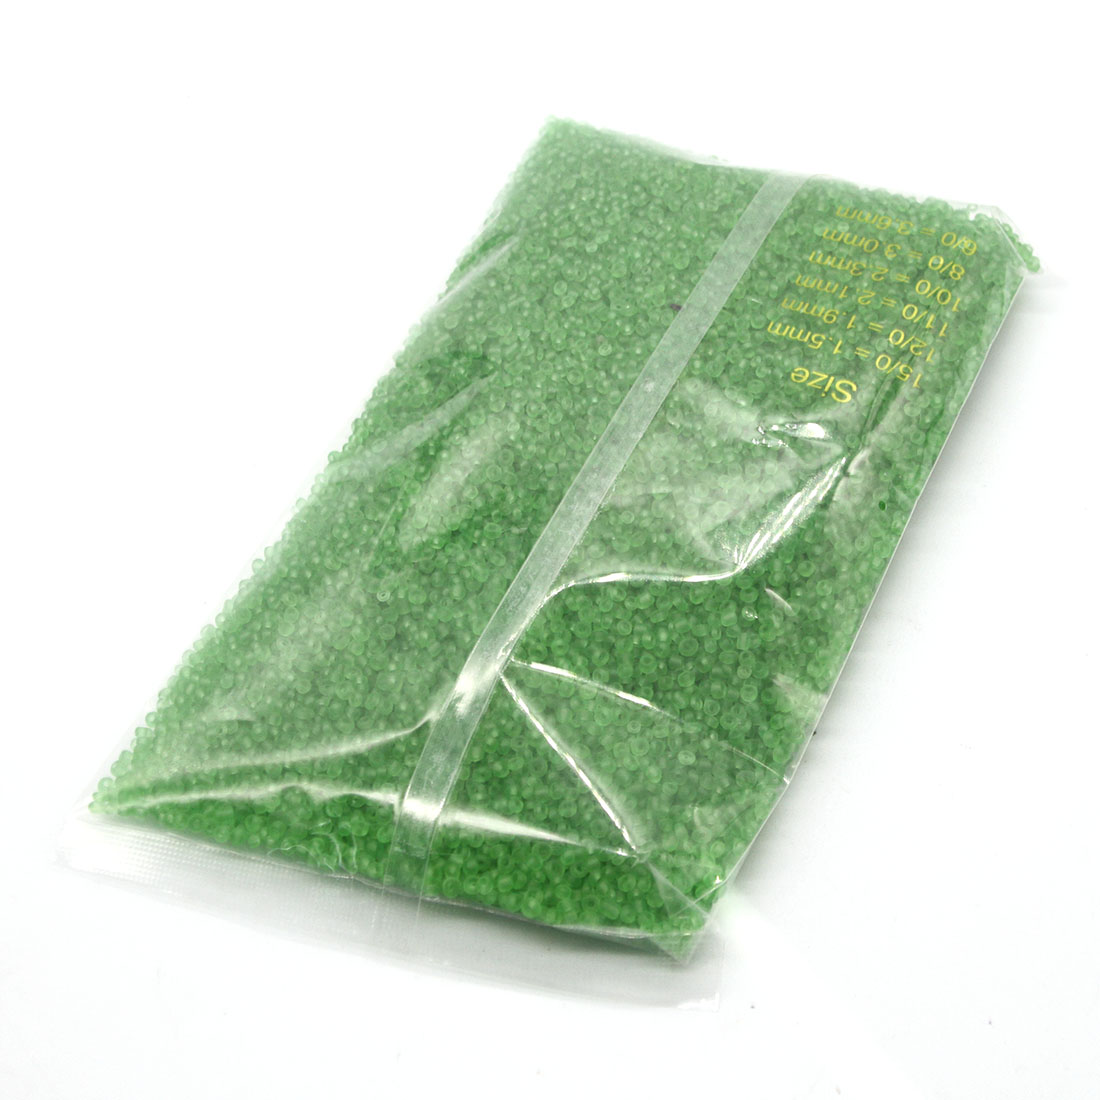 Apple green 3mm 10,000 packs